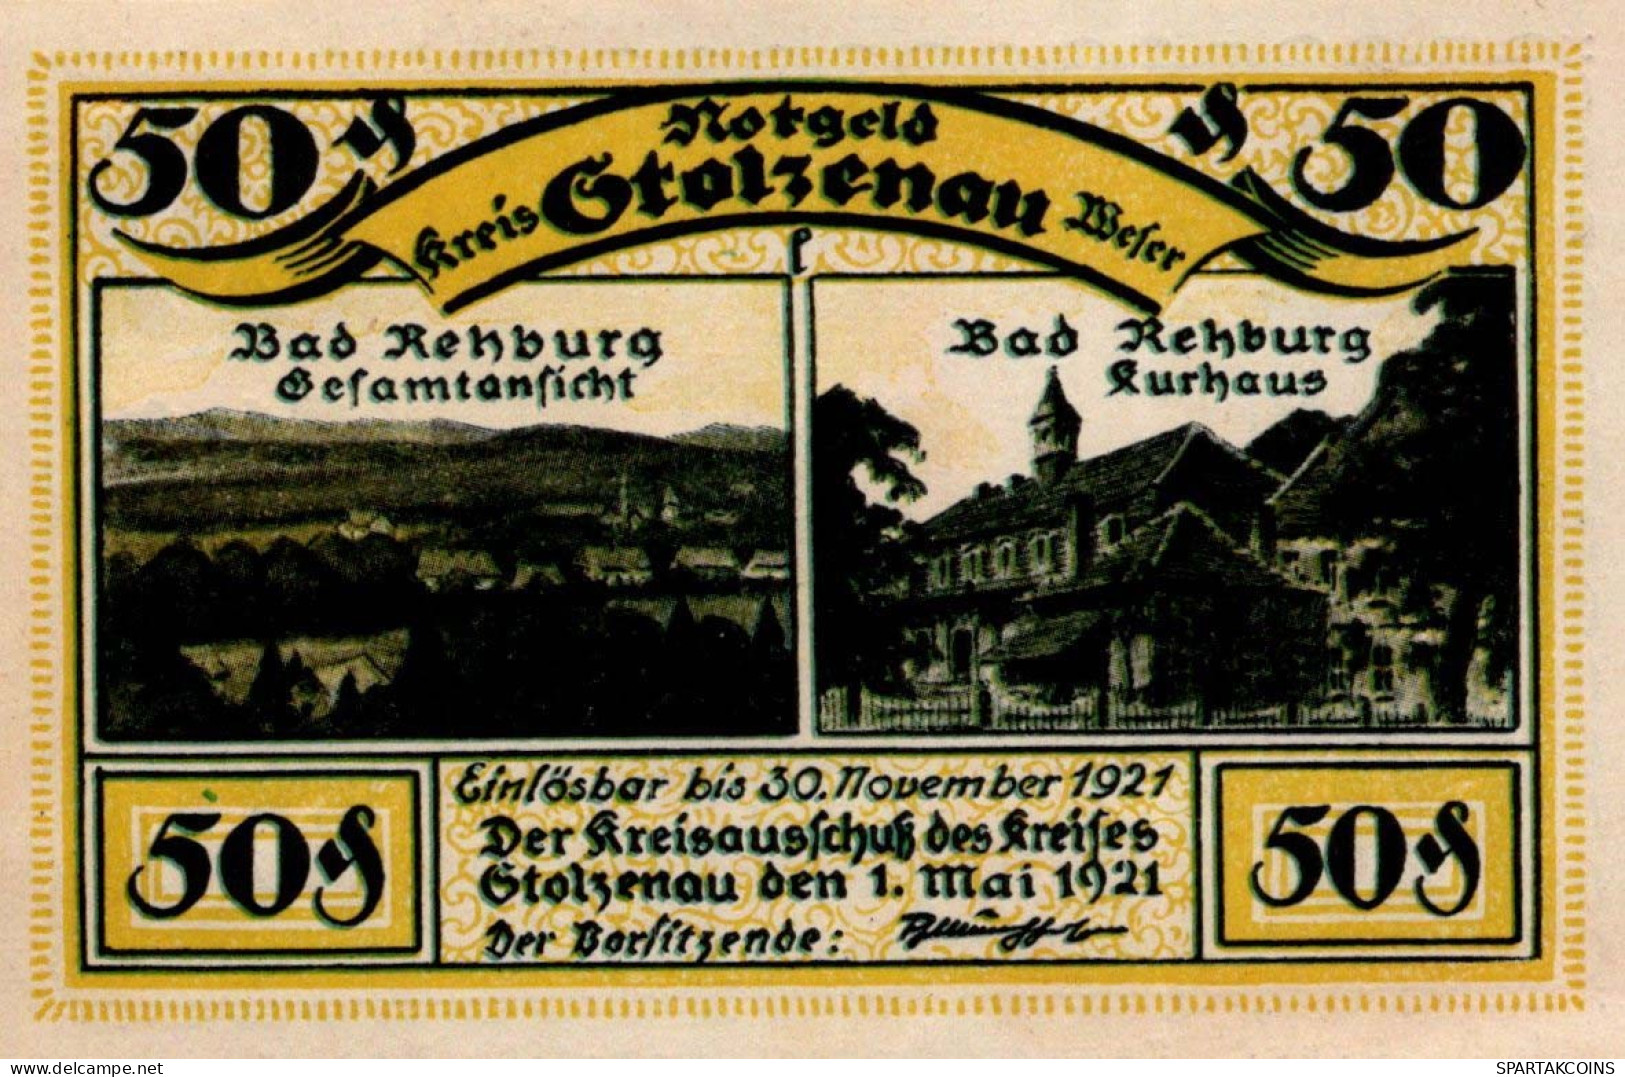 50 PFENNIG 1921 Stadt STOLZENAU Hanover DEUTSCHLAND Notgeld Banknote #PJ087 - Lokale Ausgaben